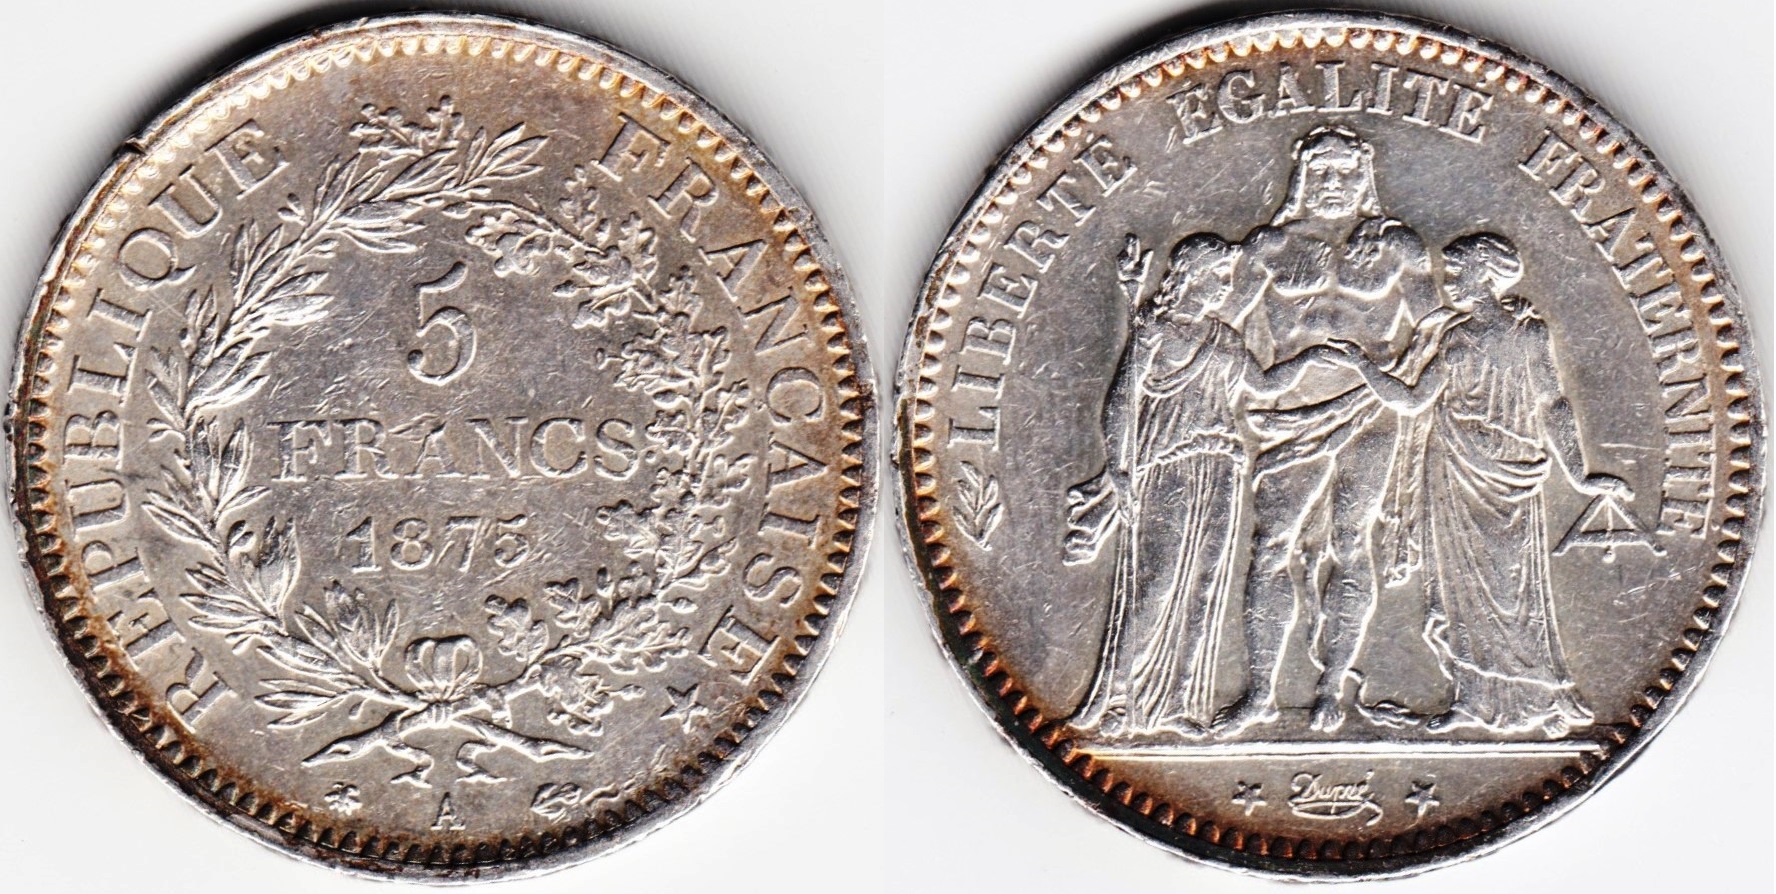 francs-05-1875A-km820.jpg